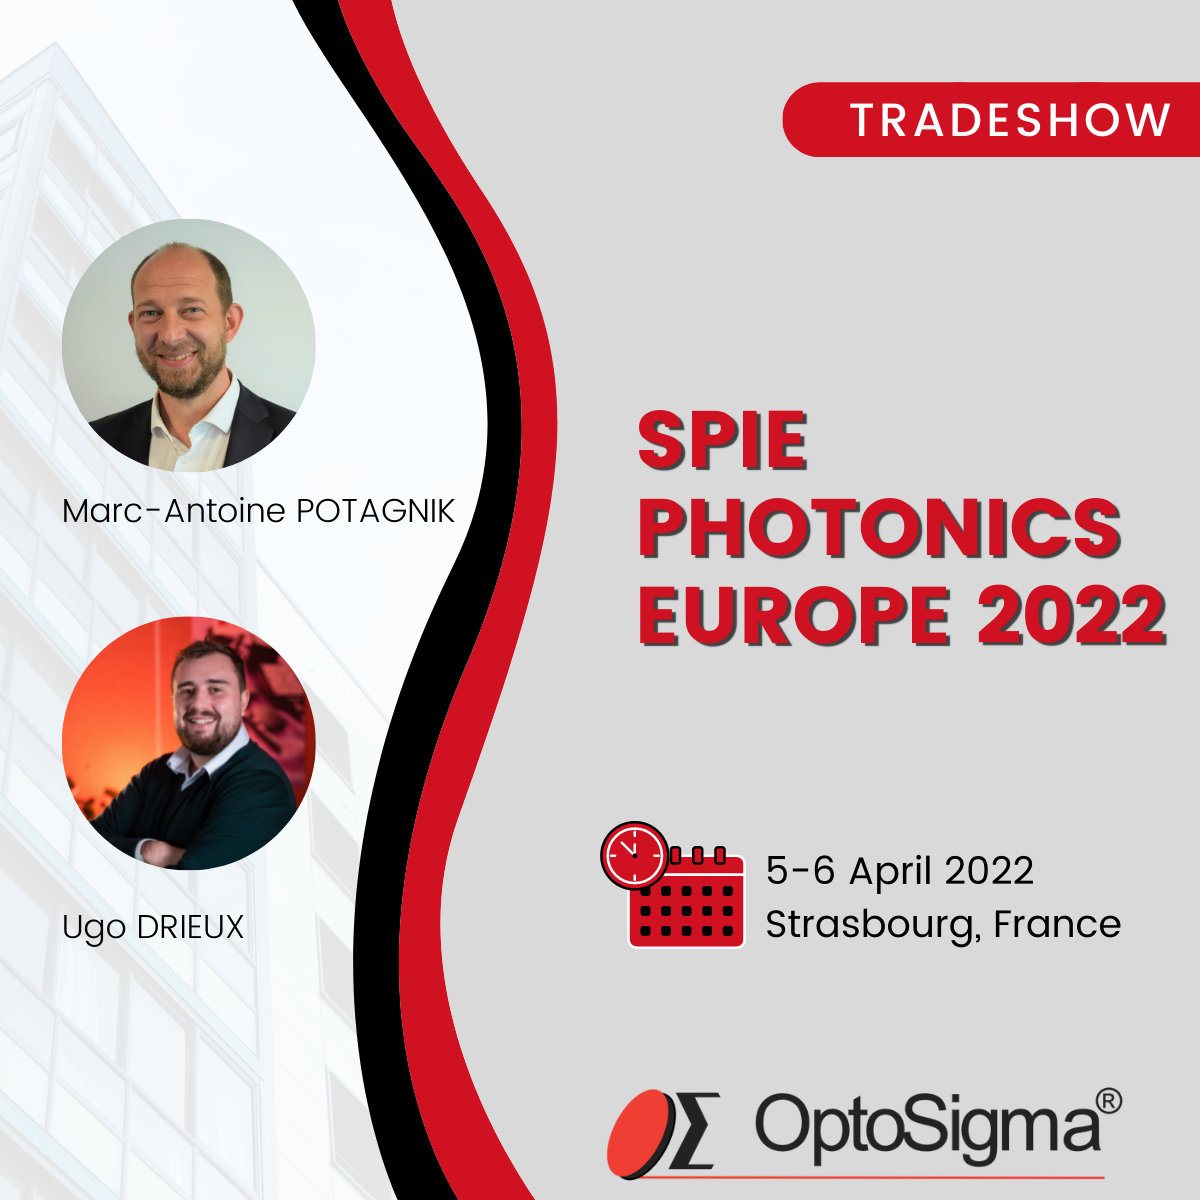 SPIE Photonics Europe 2022